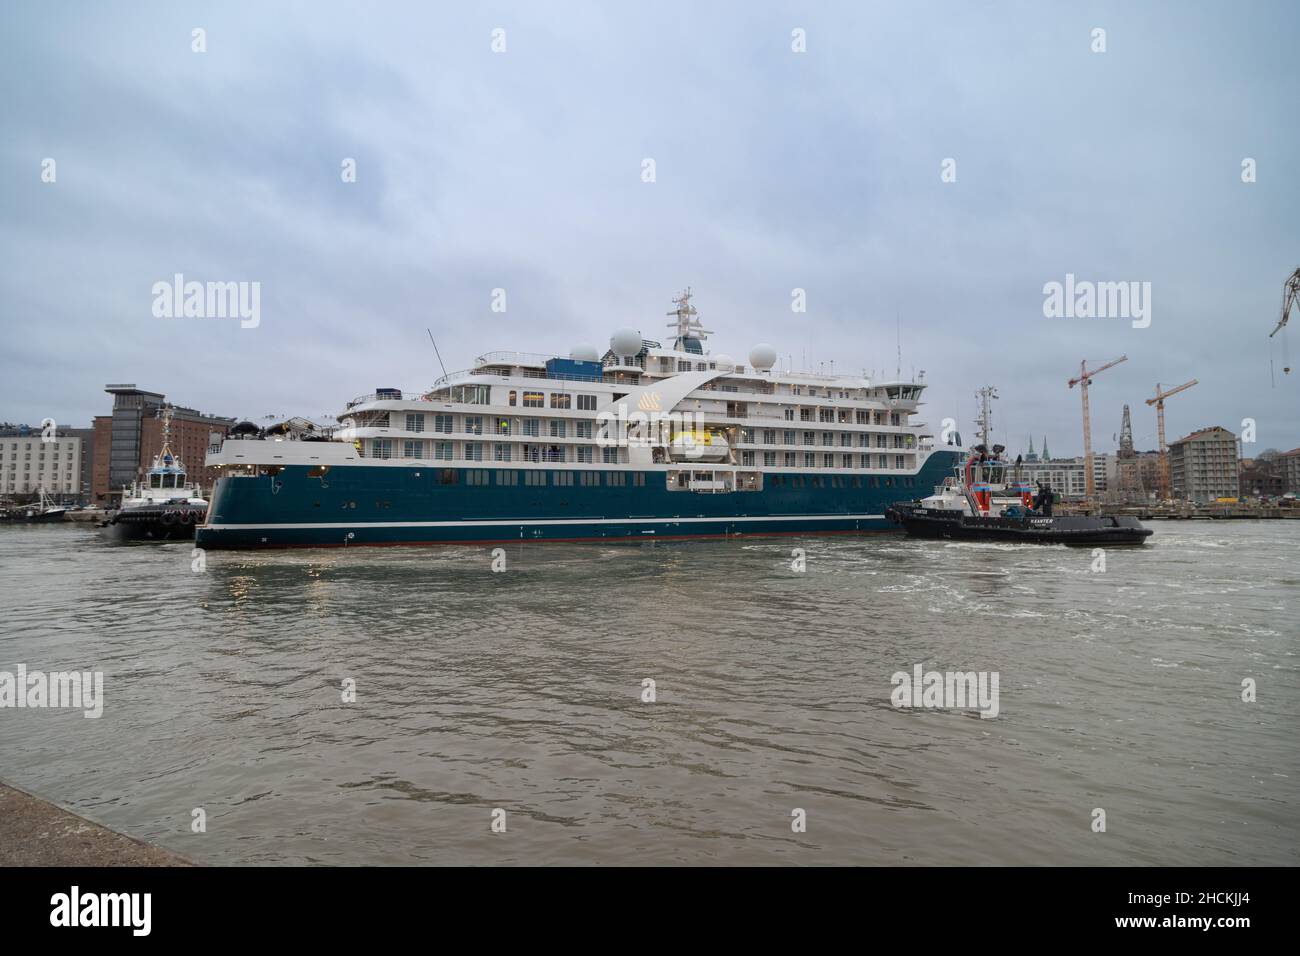 La nuova nave da crociera della spedizione di Swan Hellenic SH Minerva che ritorna al cantiere navale di Helsinki dopo prove in mare. Foto Stock